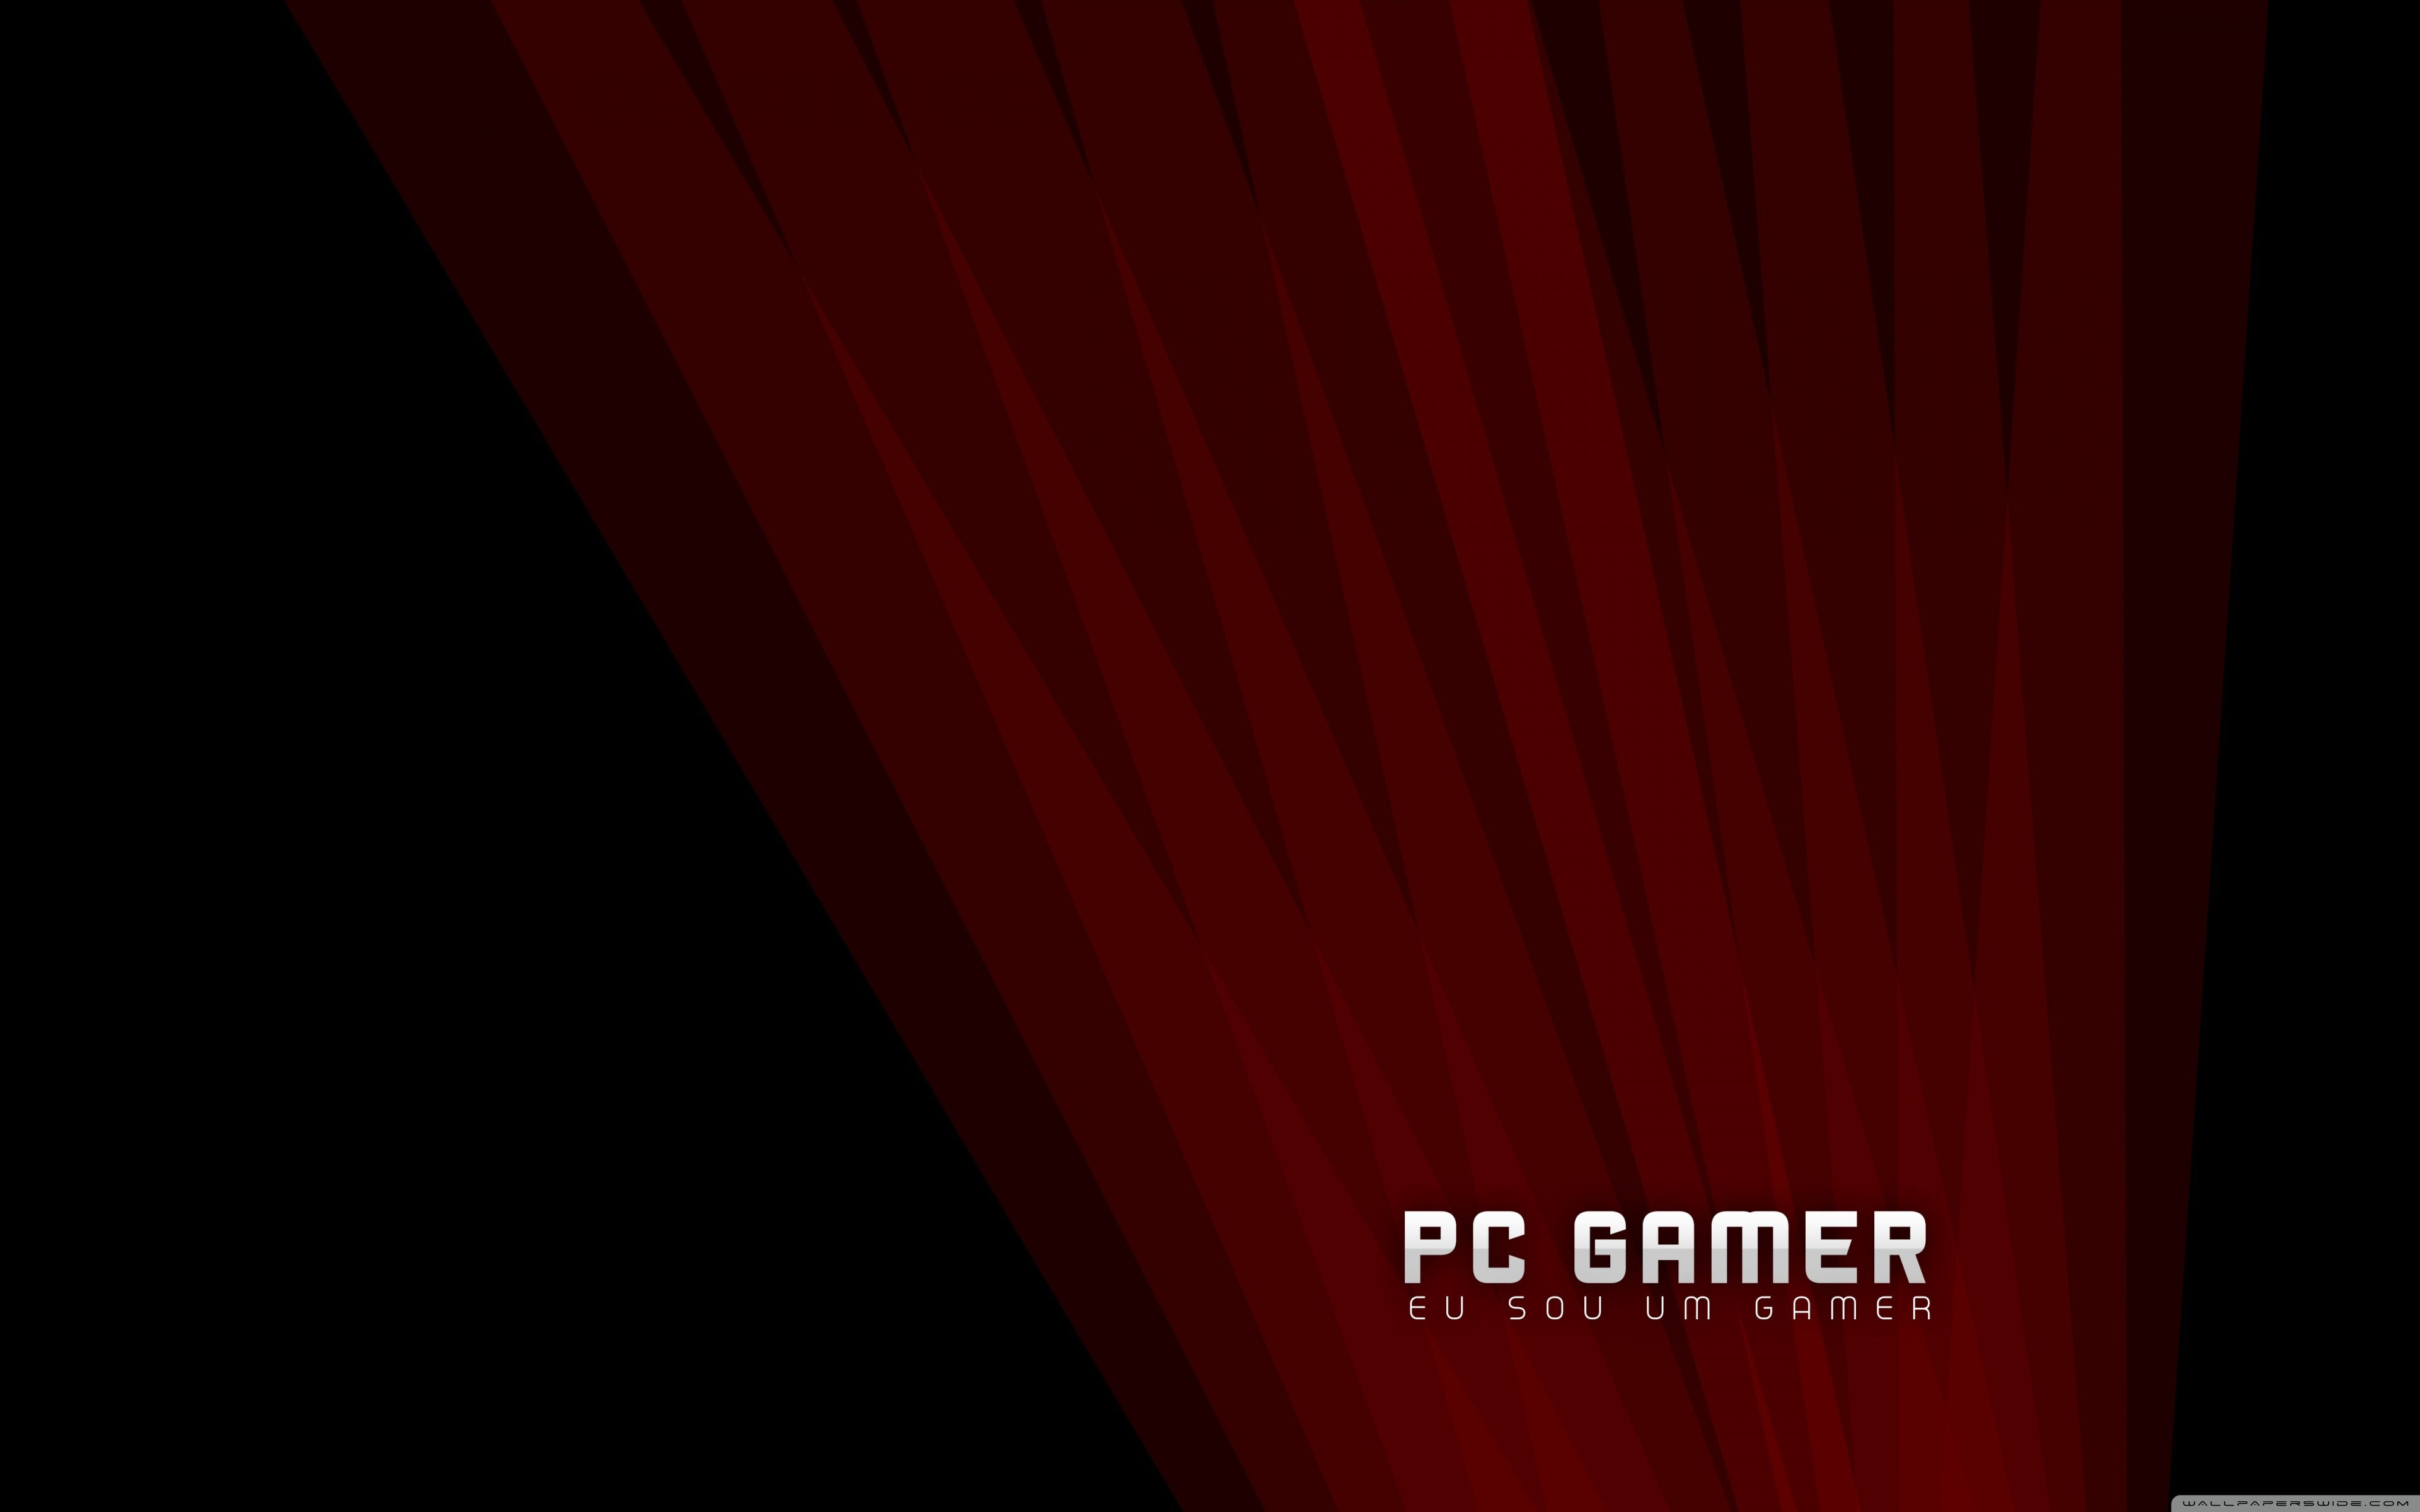 PC Gamer Ultra HD Desktop Background Wallpaper for: Widescreen